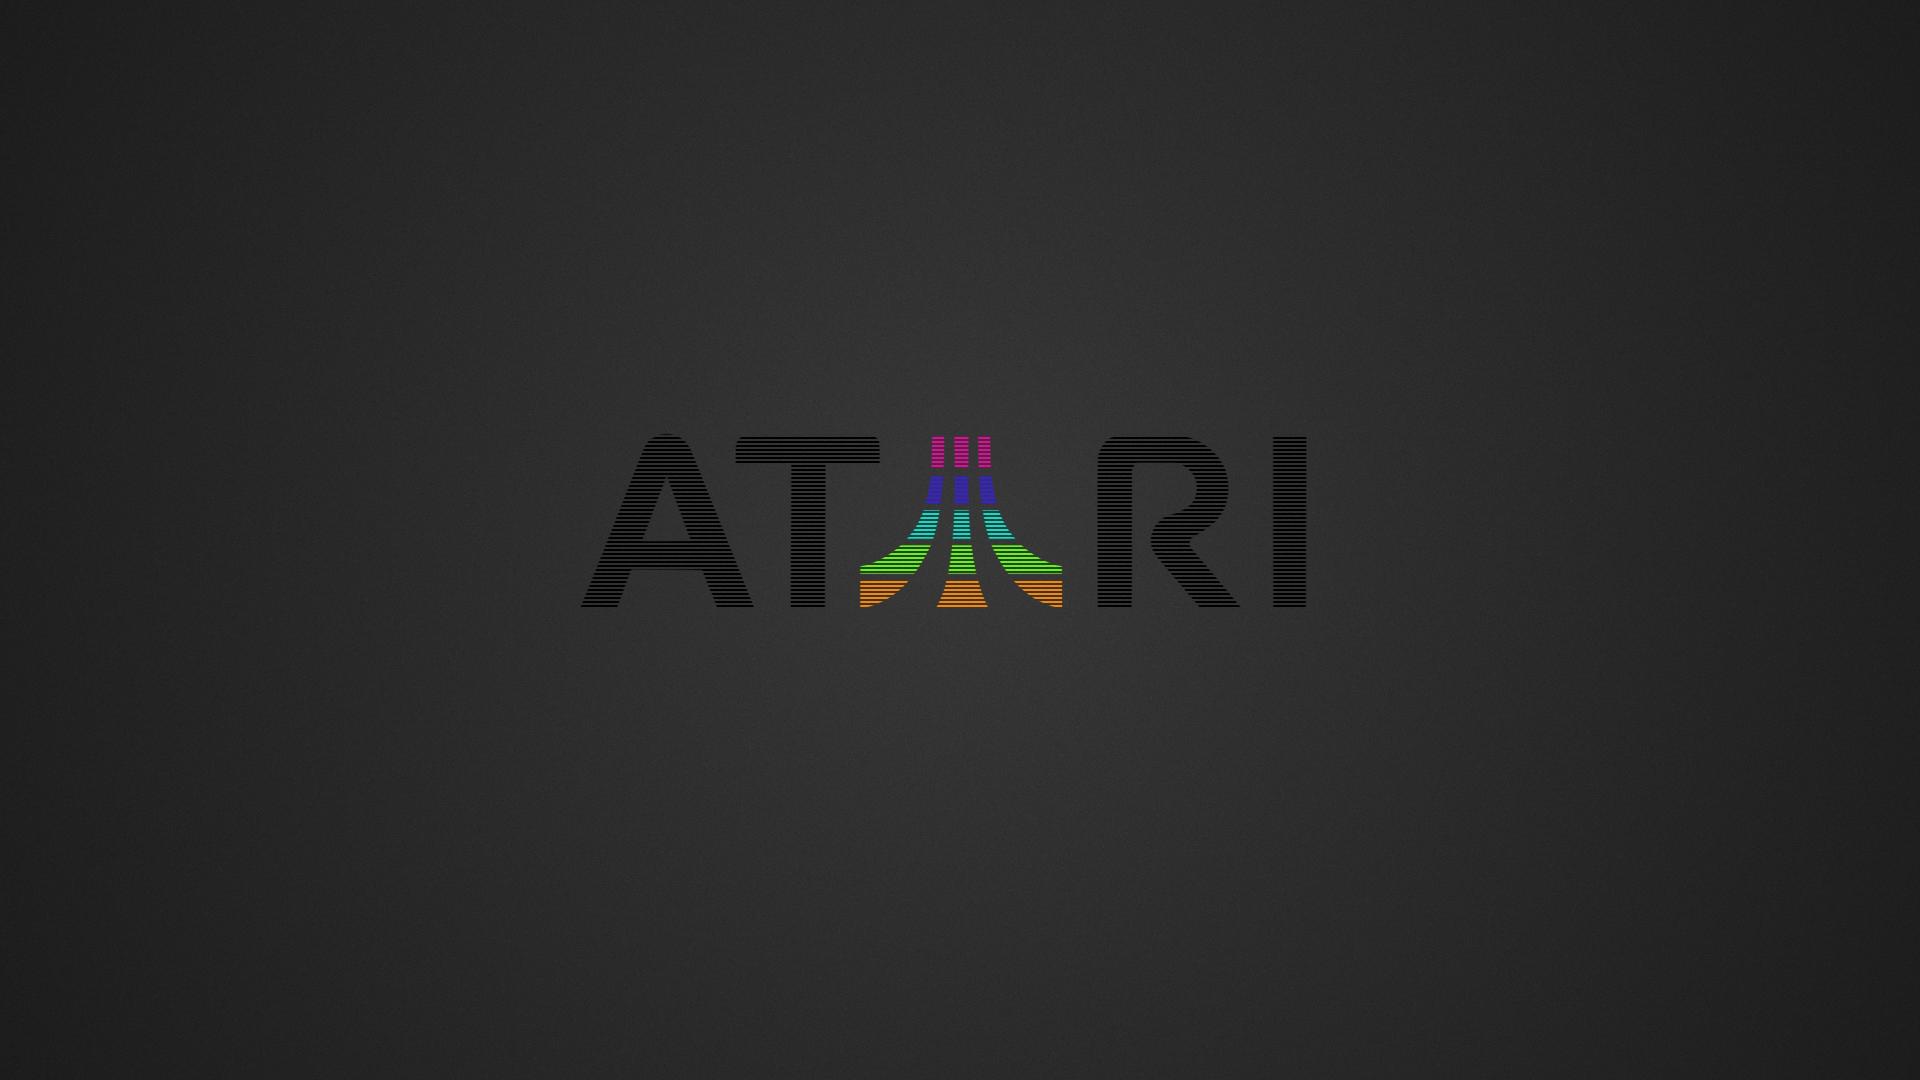 Video Game Atari HD Wallpaper